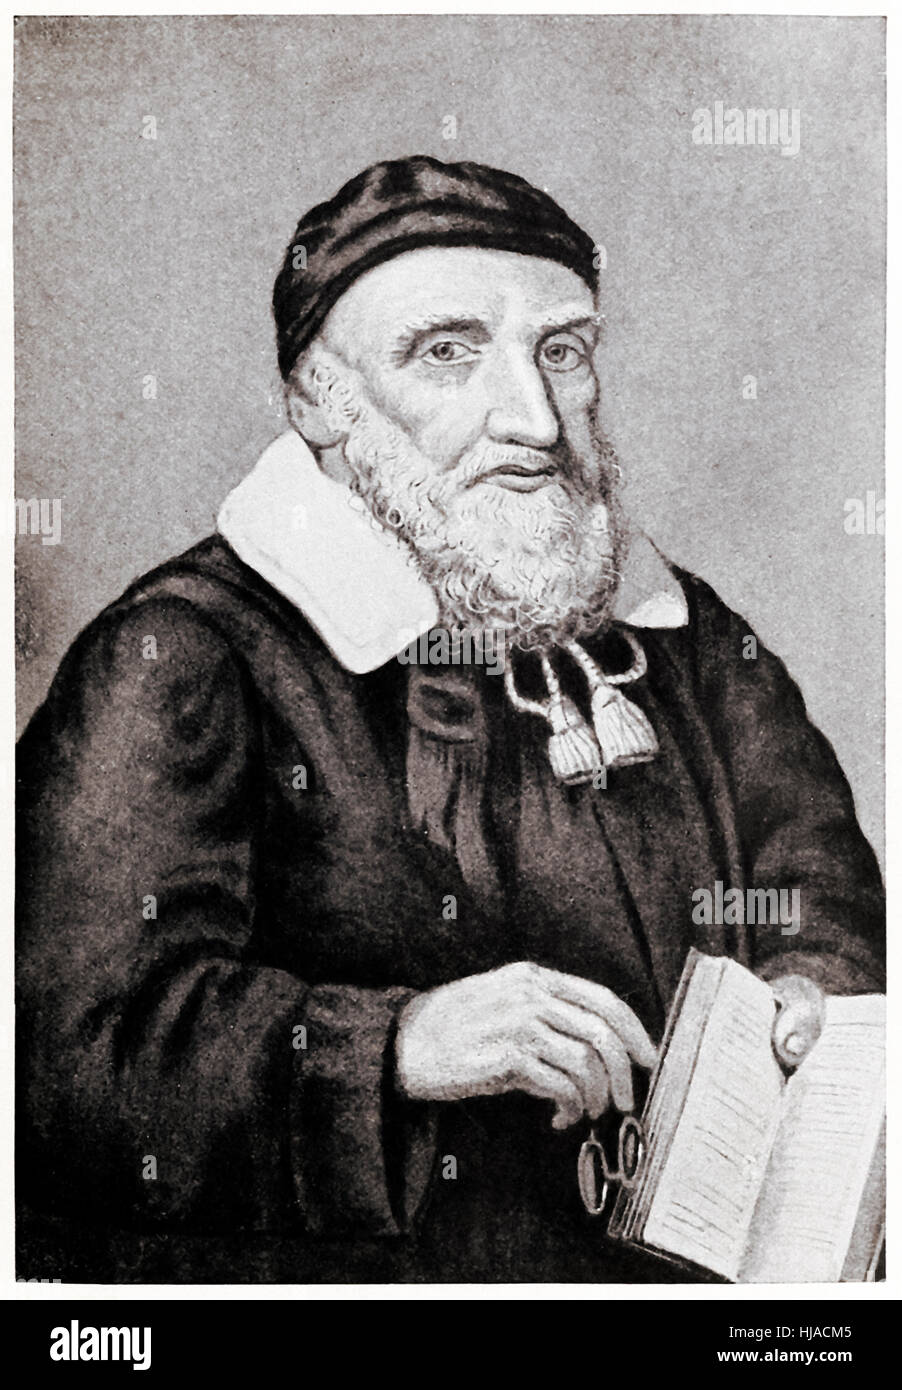 Reverend Richard Mather (1596 – 1669) zuerst in einer Reihe von Neu-England Puritaner geistliche und Führer der New England Congregationalism "Bay Psalm Book" Co-Autor veröffentlichte im Jahre 1640. Stockfoto